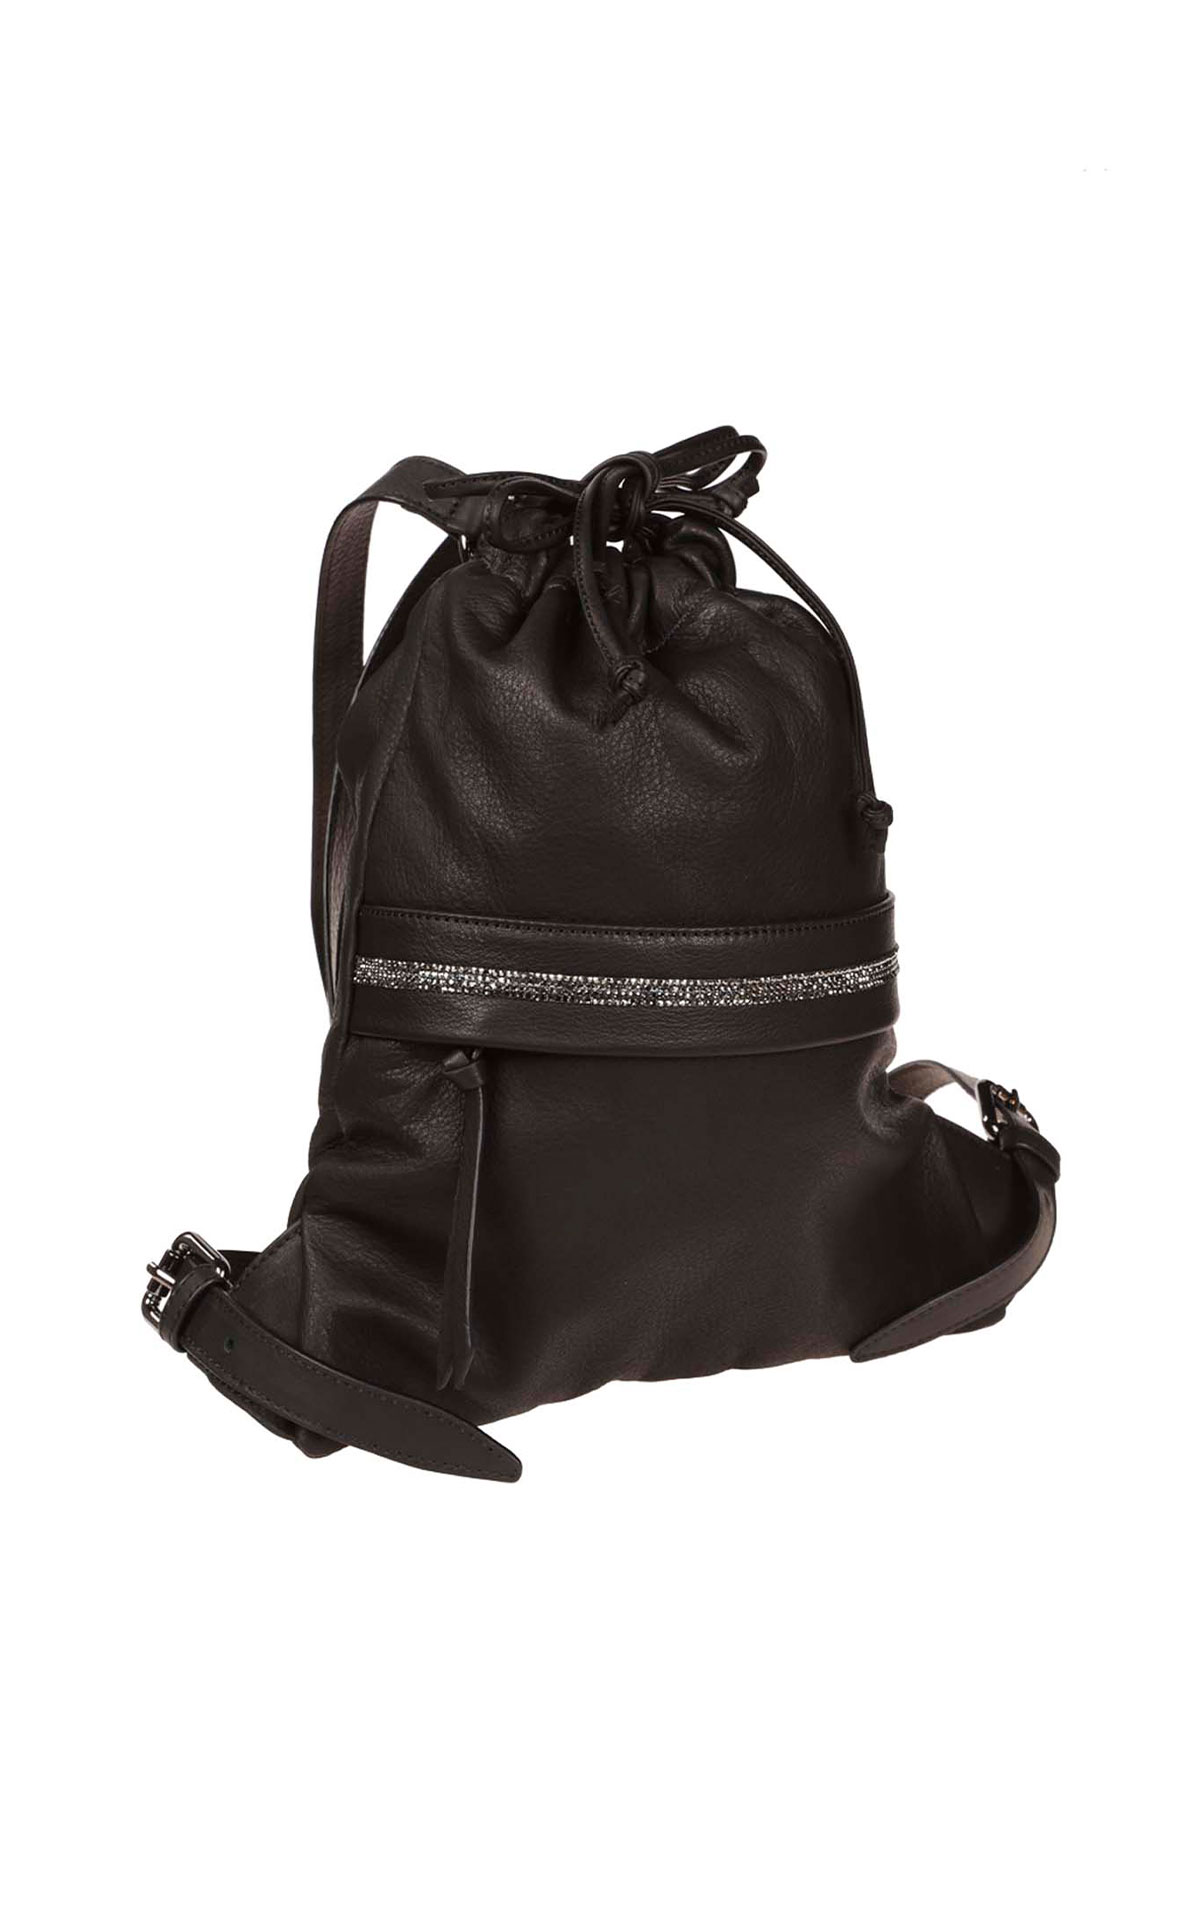 Eleventy Black drawstring bag from Bicester Village